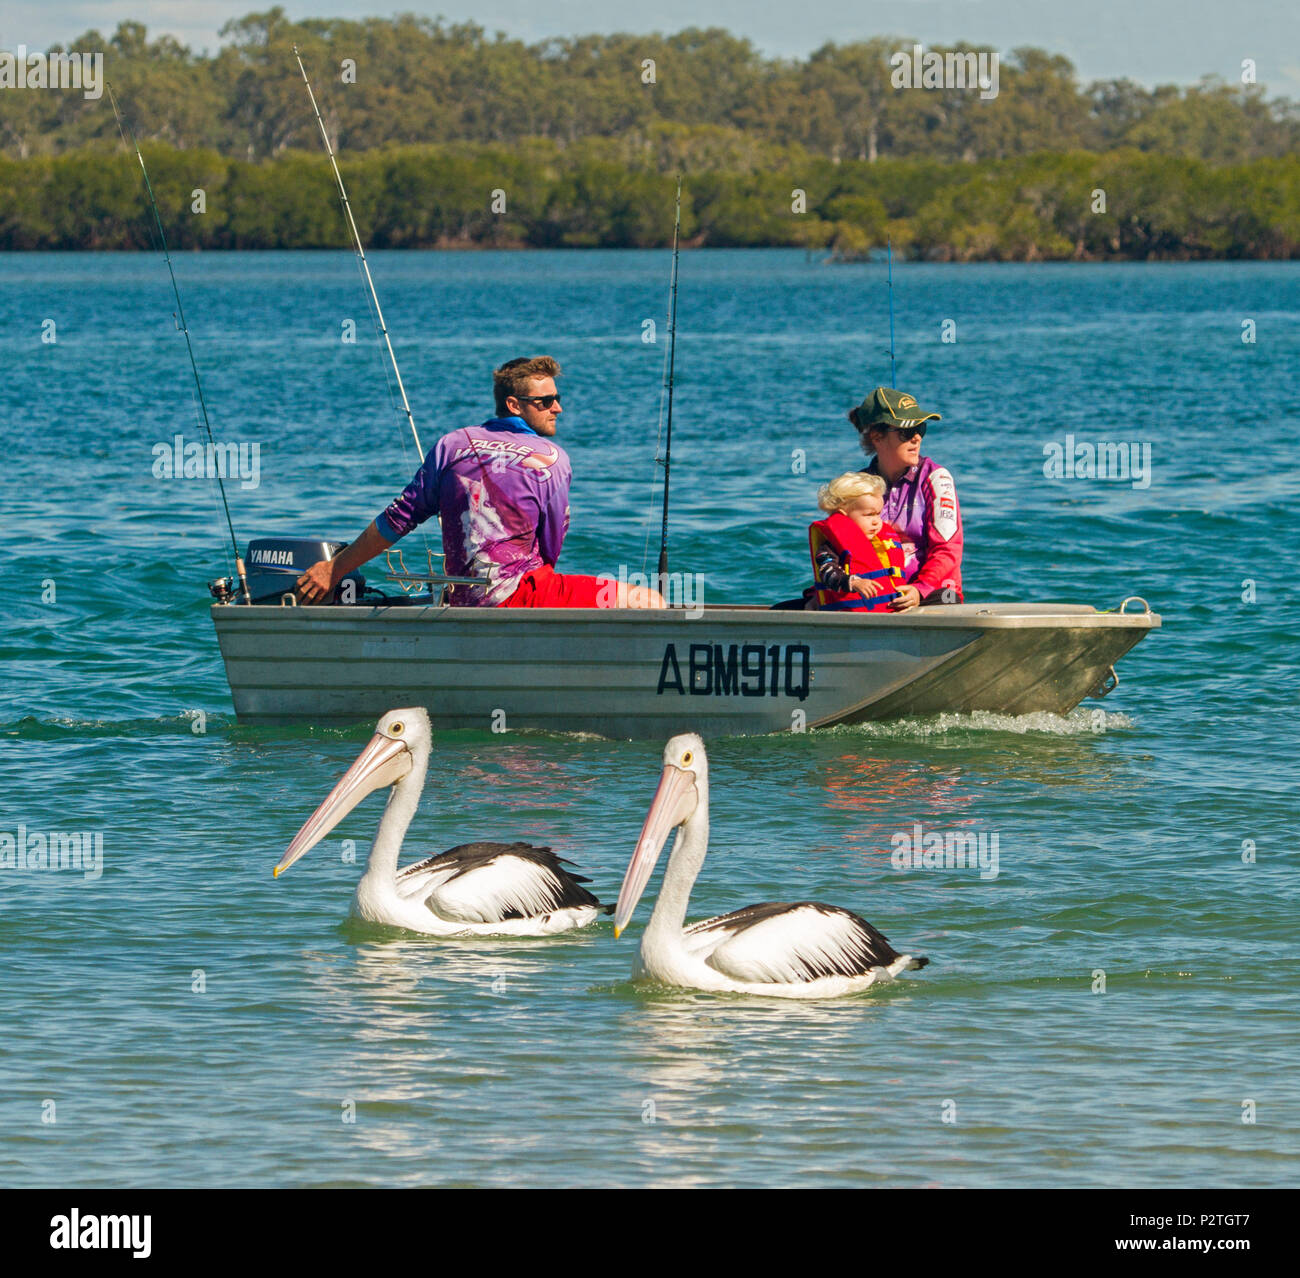 Familie, Eltern und Kind tragen Schwimmweste, Angeln vom Schlauchboot mit pelikane neben dem Boot auf ruhige, blaue Wasser von Wald gesäumt in Australien Stockfoto